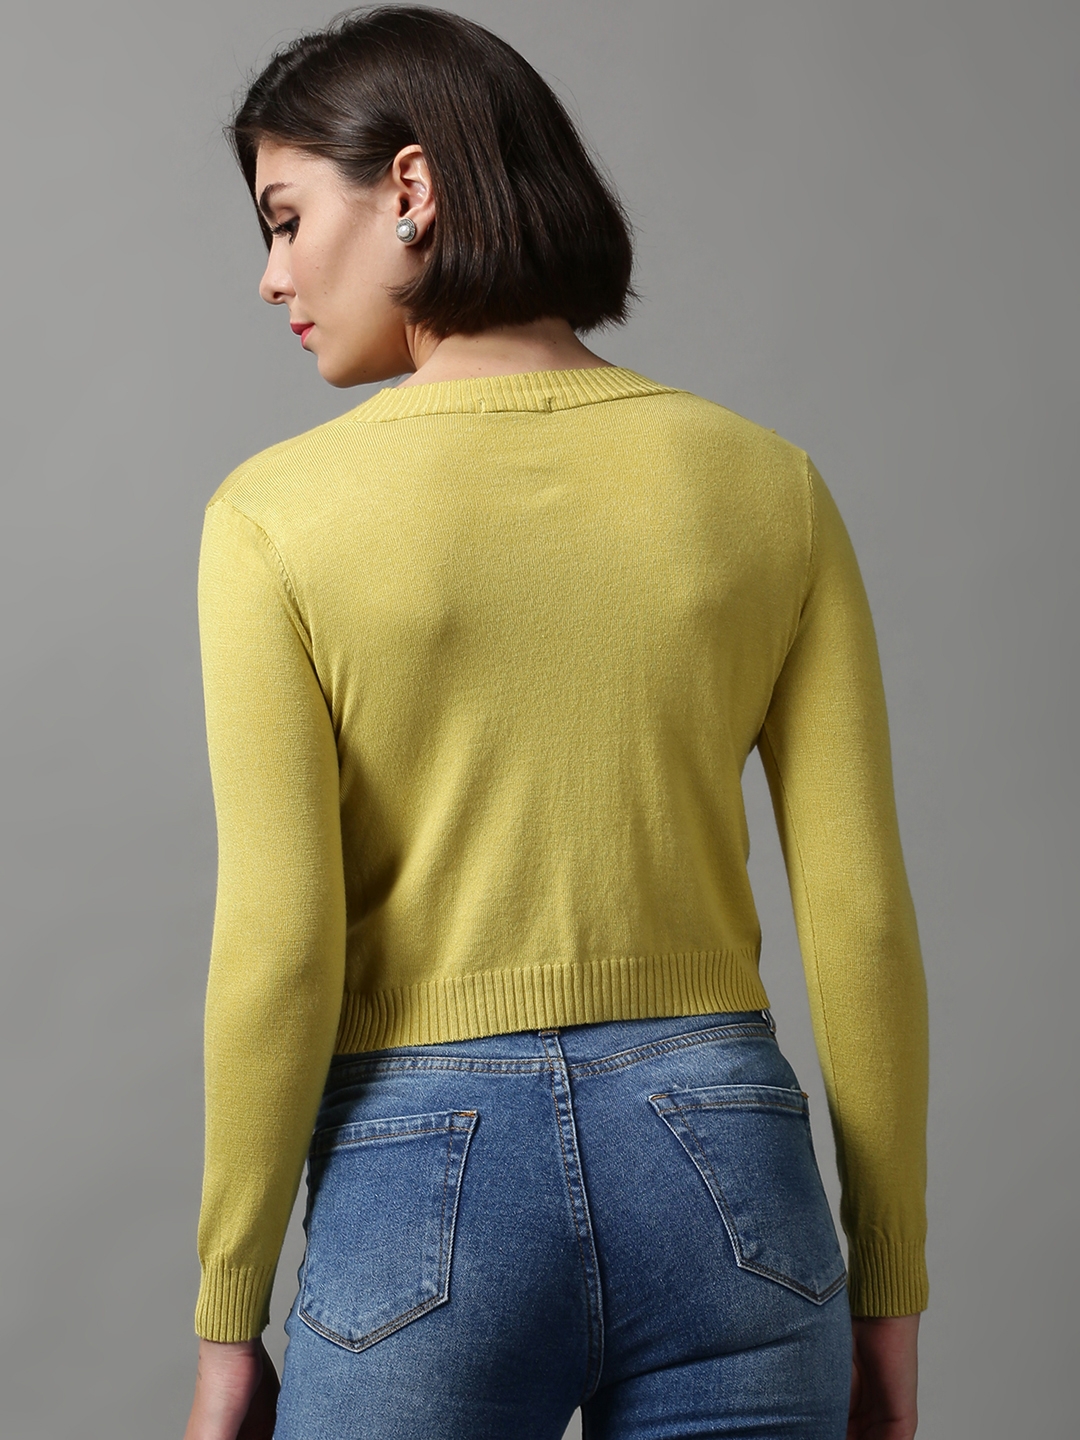 Women's Green Wool Solid Sweaters